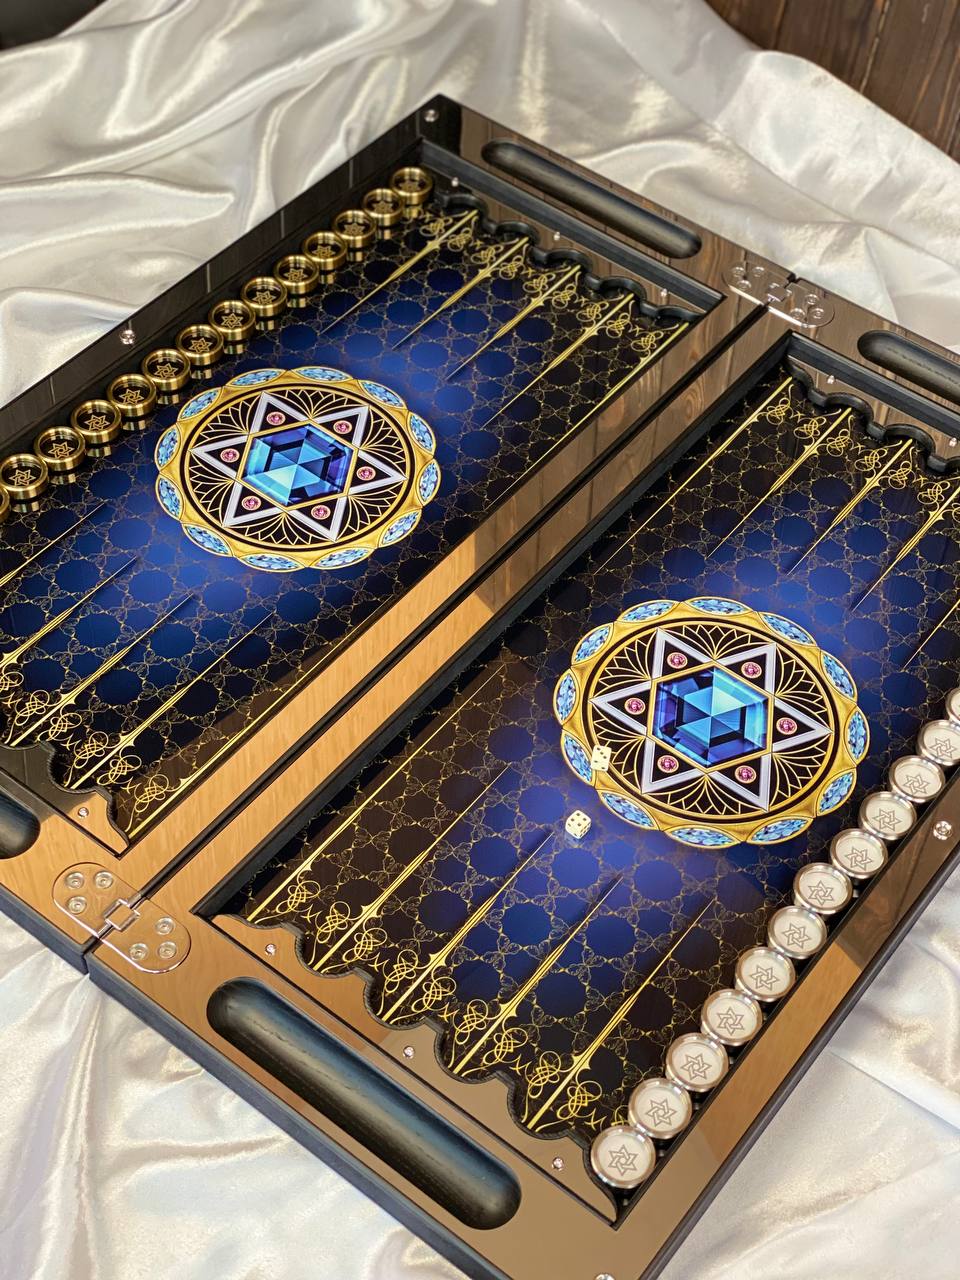 Metal backgammon, glass palying area, luxury beackgamon set, unique backgammon set